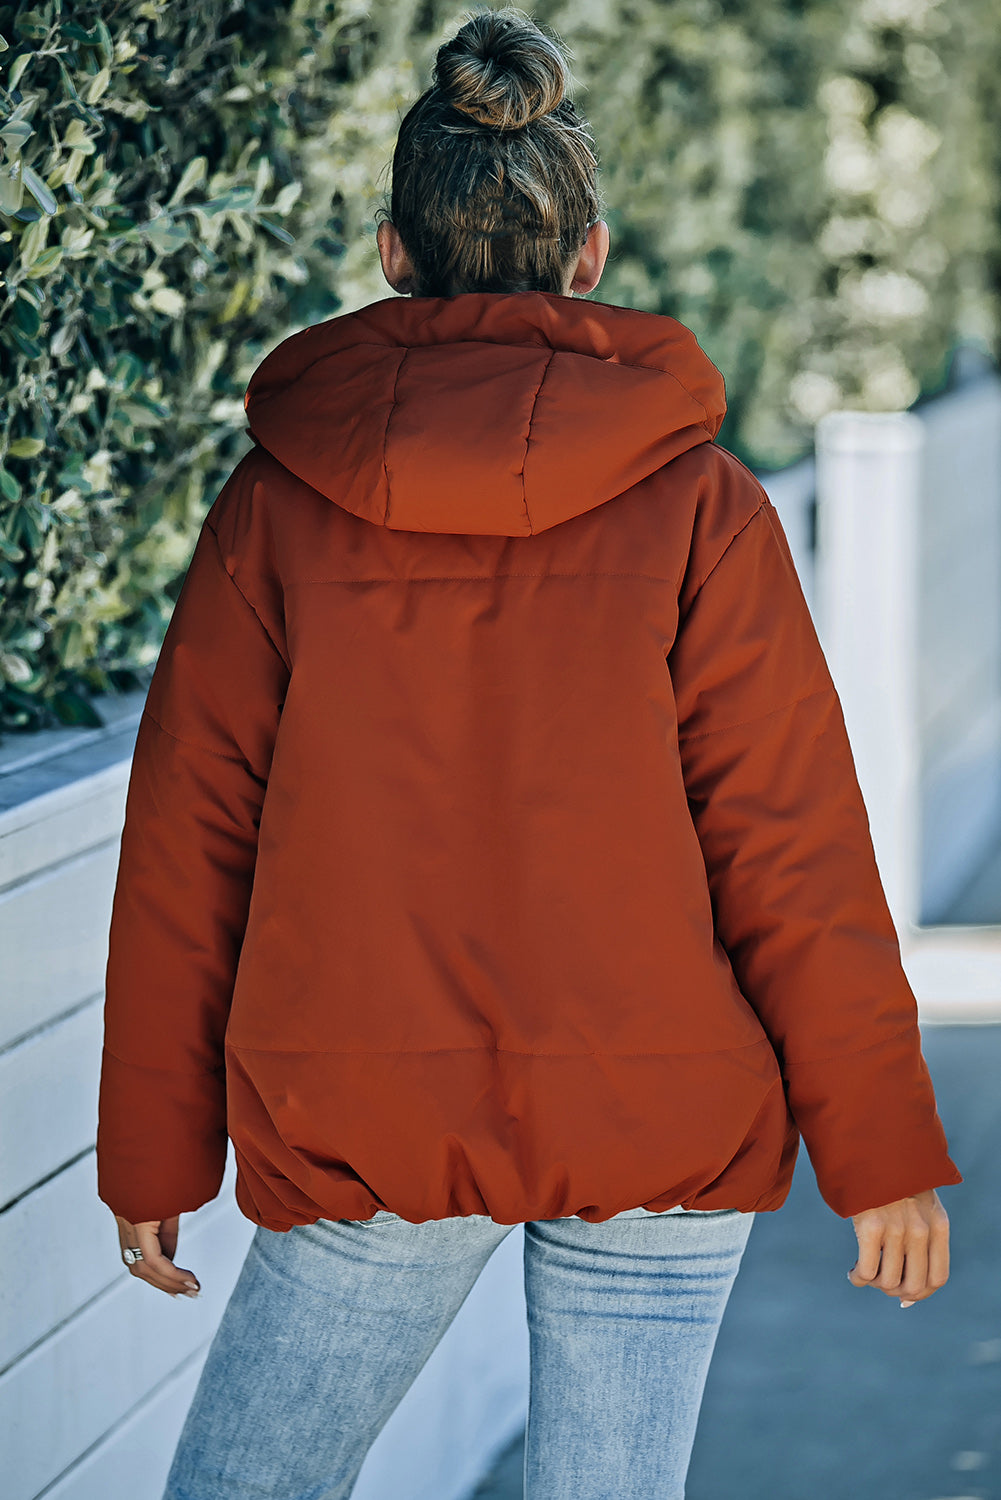 LC856045-14-S, LC856045-14-M, LC856045-14-L, LC856045-14-XL, LC856045-14-2XL, Orange Winter Coats for Women Outdoor Zipper Hooded Coat Outwear with Pockets